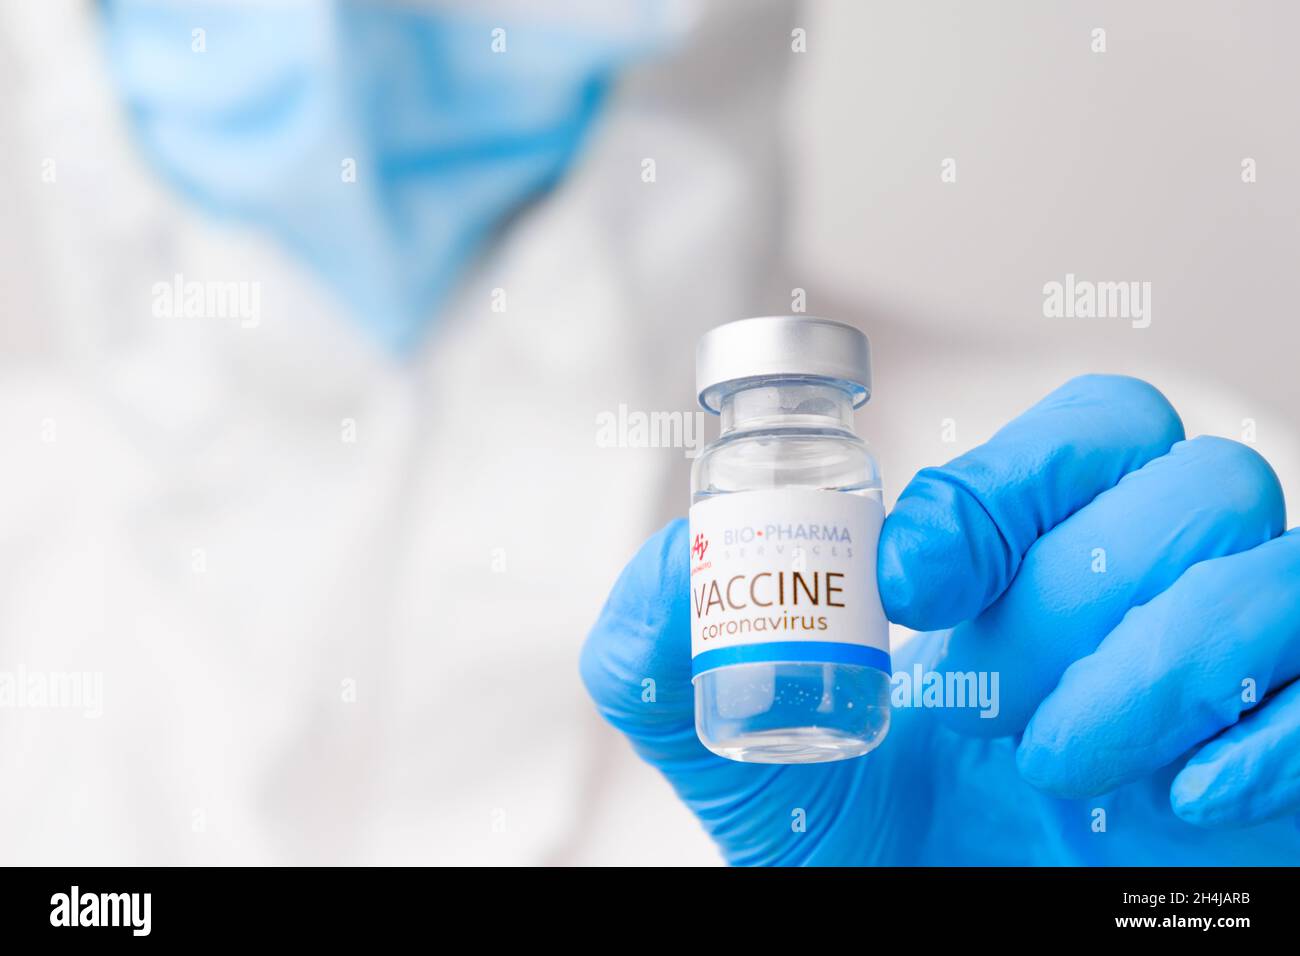 BIO Pharma vaccino contro SARS-Cov-2, coronavirus o Covid-19 messo sul tavolo da un medico nei guanti di gomma, marzo 2021, San Francisco, USA Foto Stock